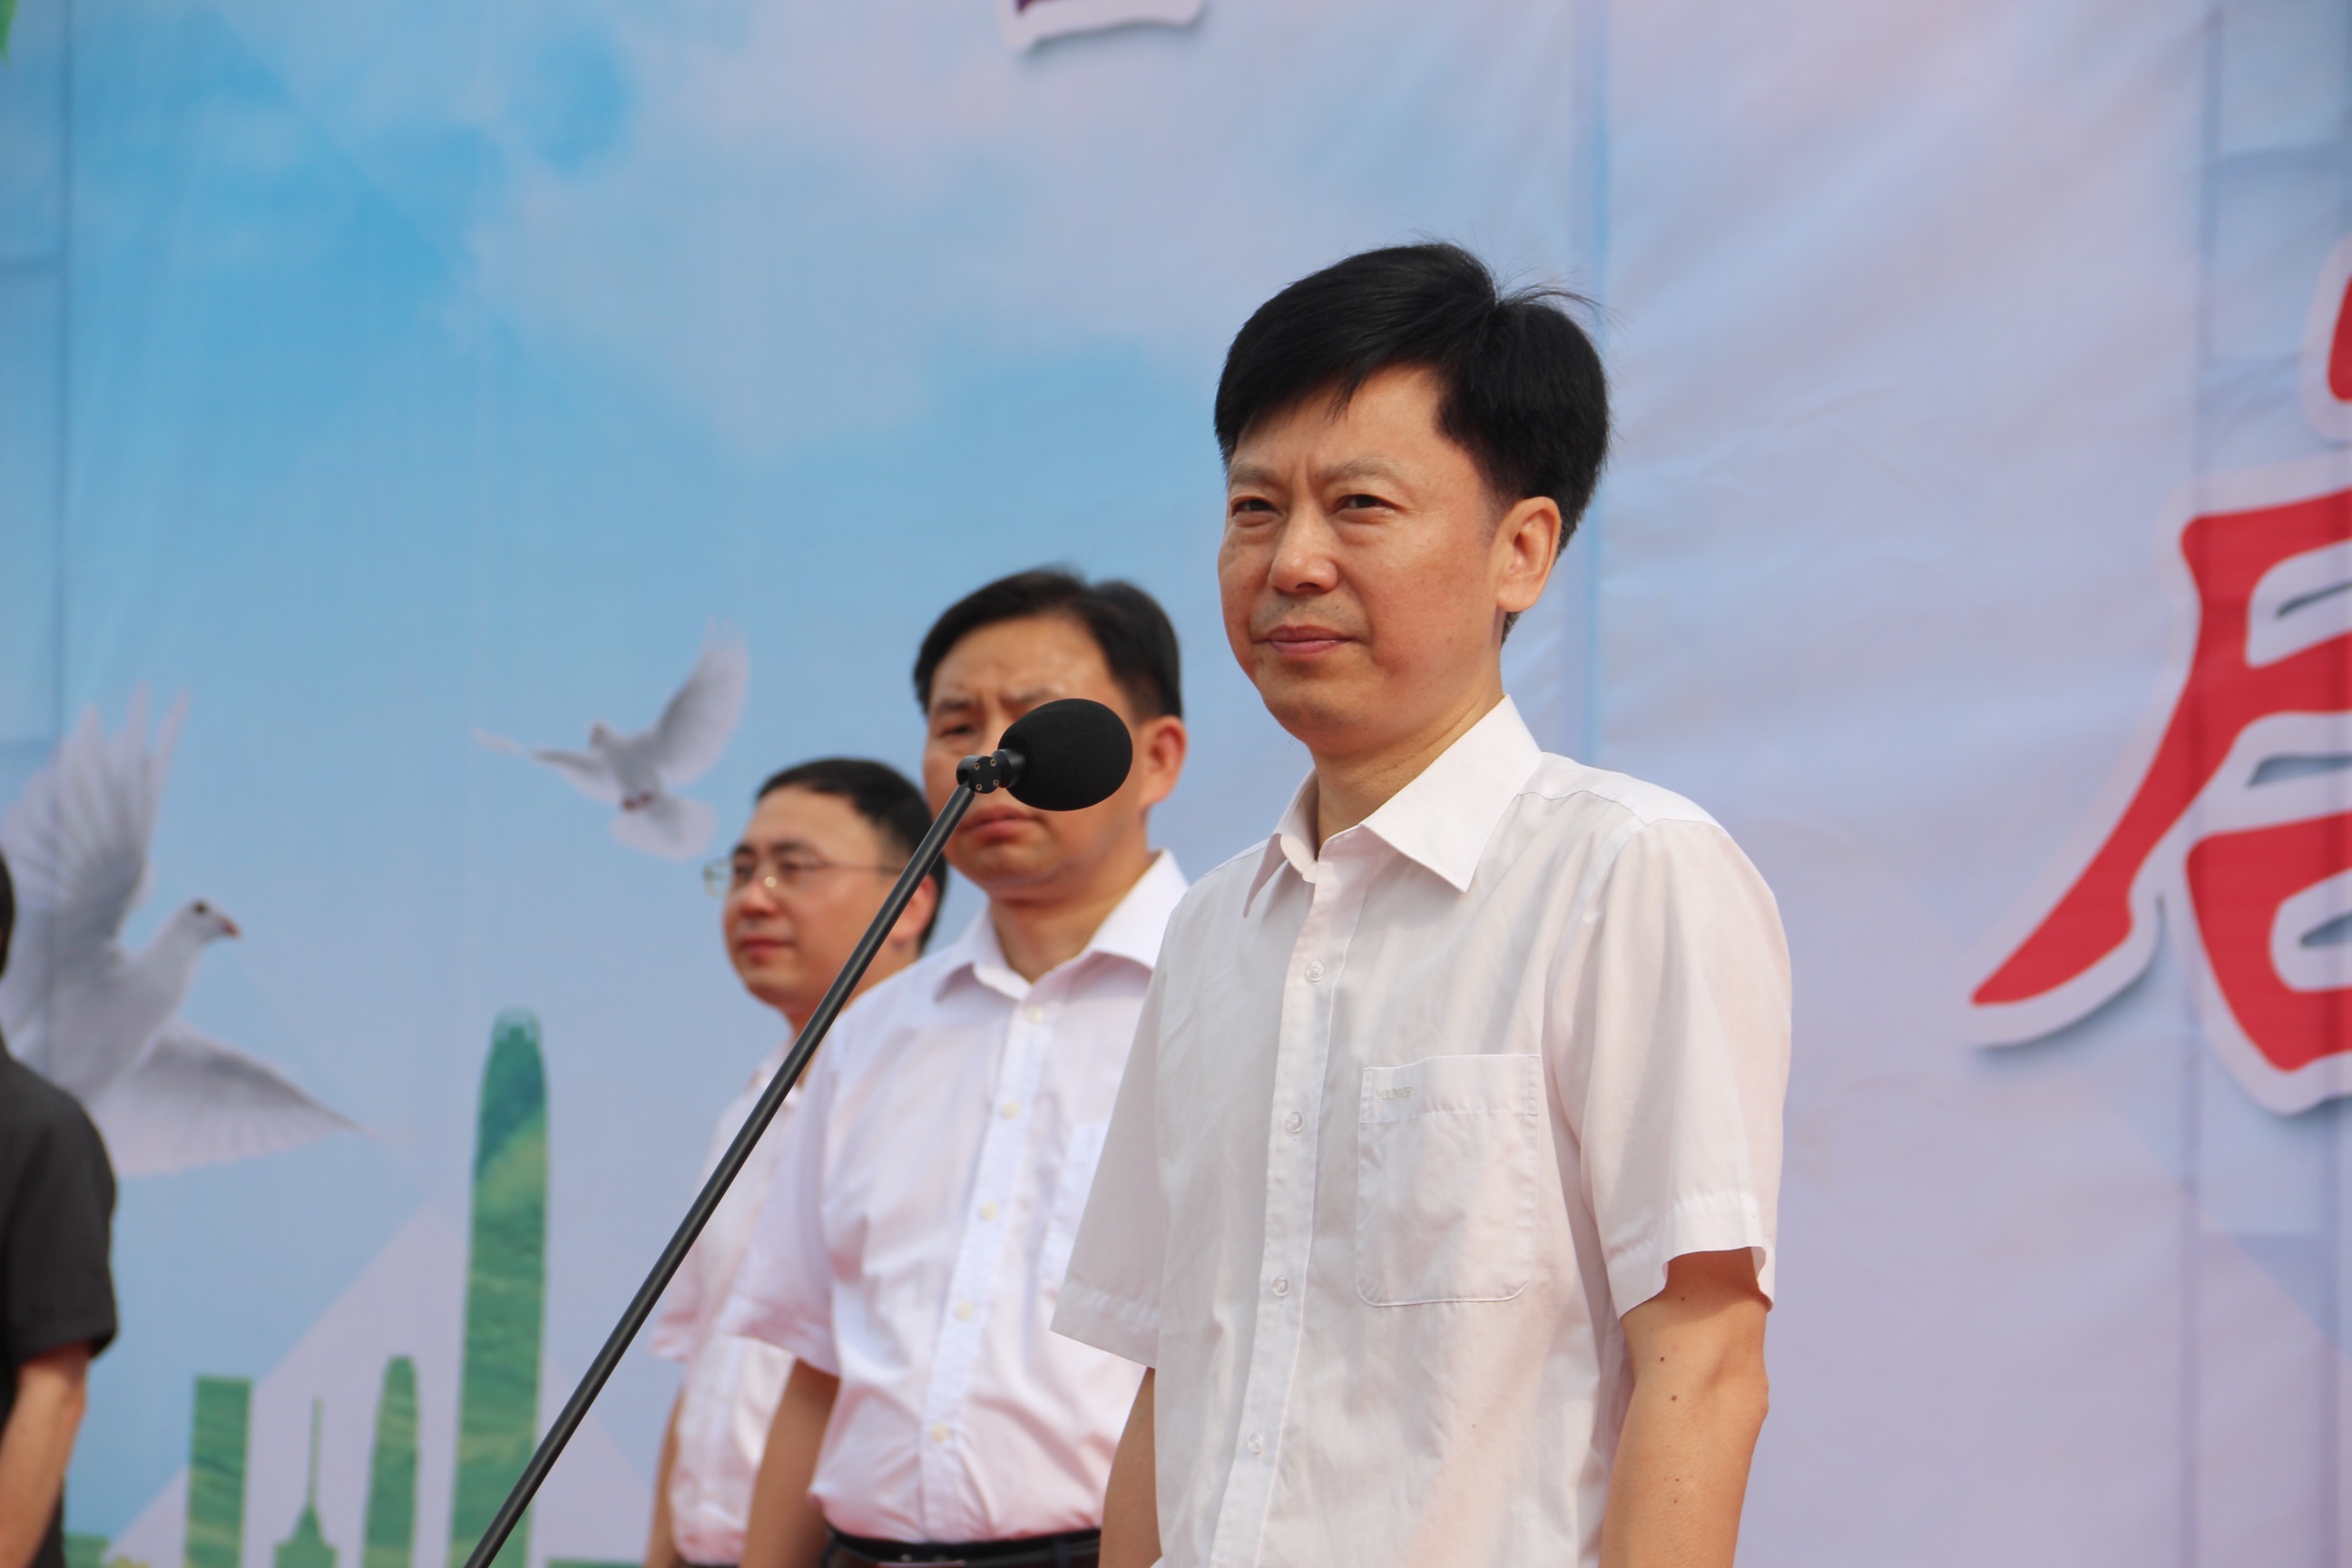 澧县县委副书记马永忠宣布活动正式启动启动仪式结束后,现场举办了